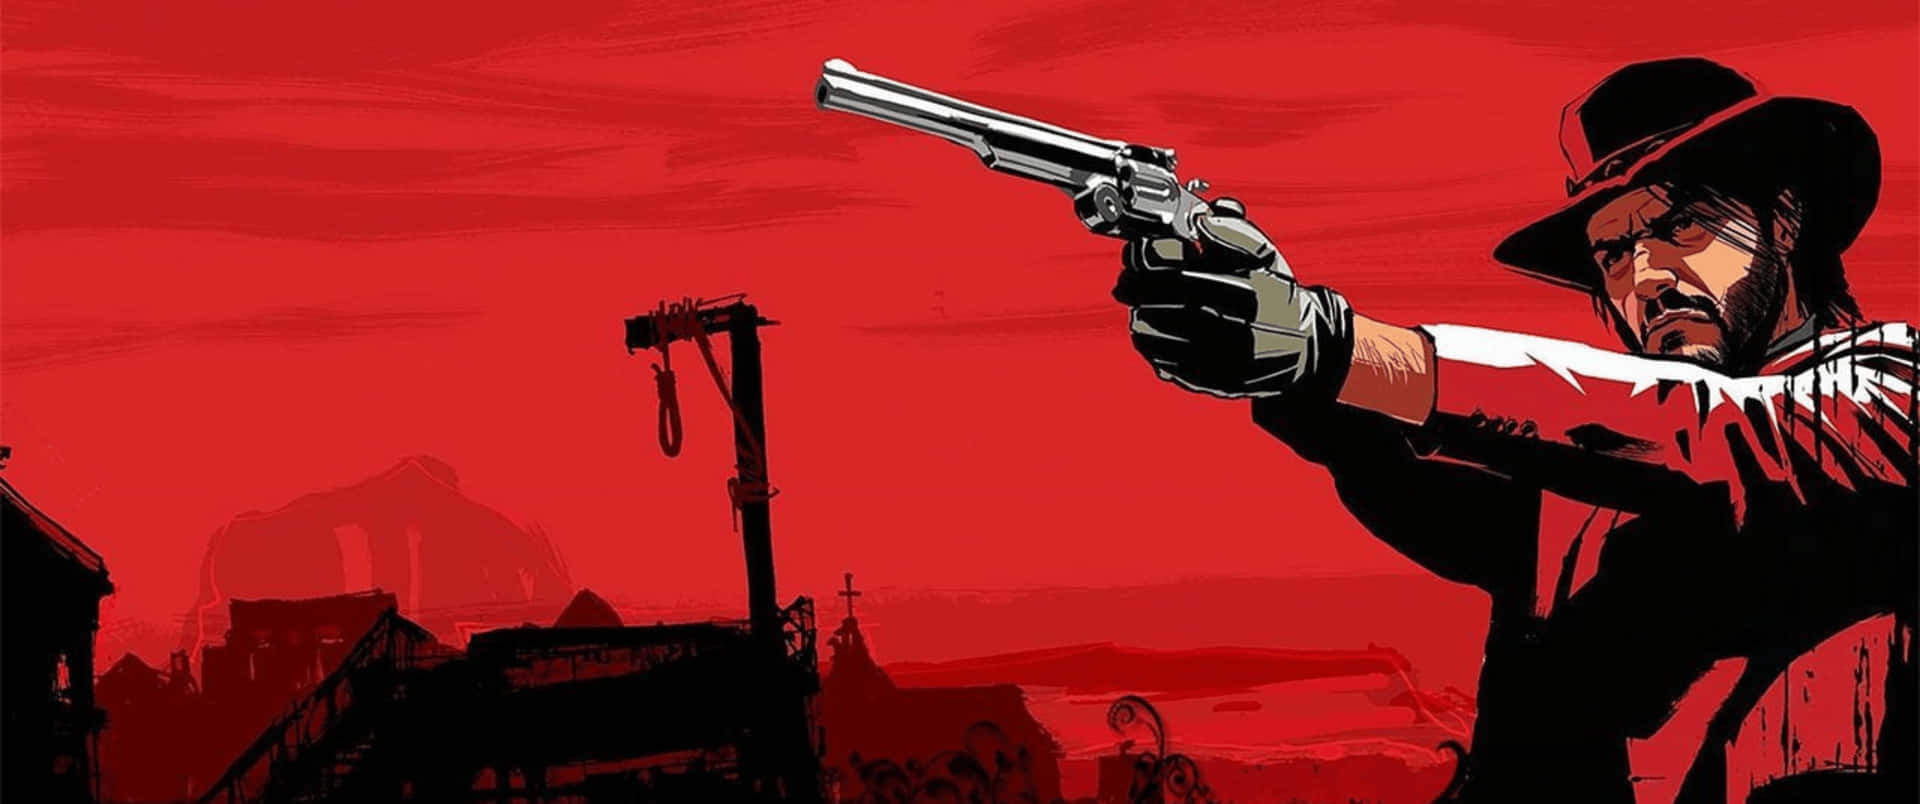 3440x1440p Red Dead Redemption 2 Background Gat Background